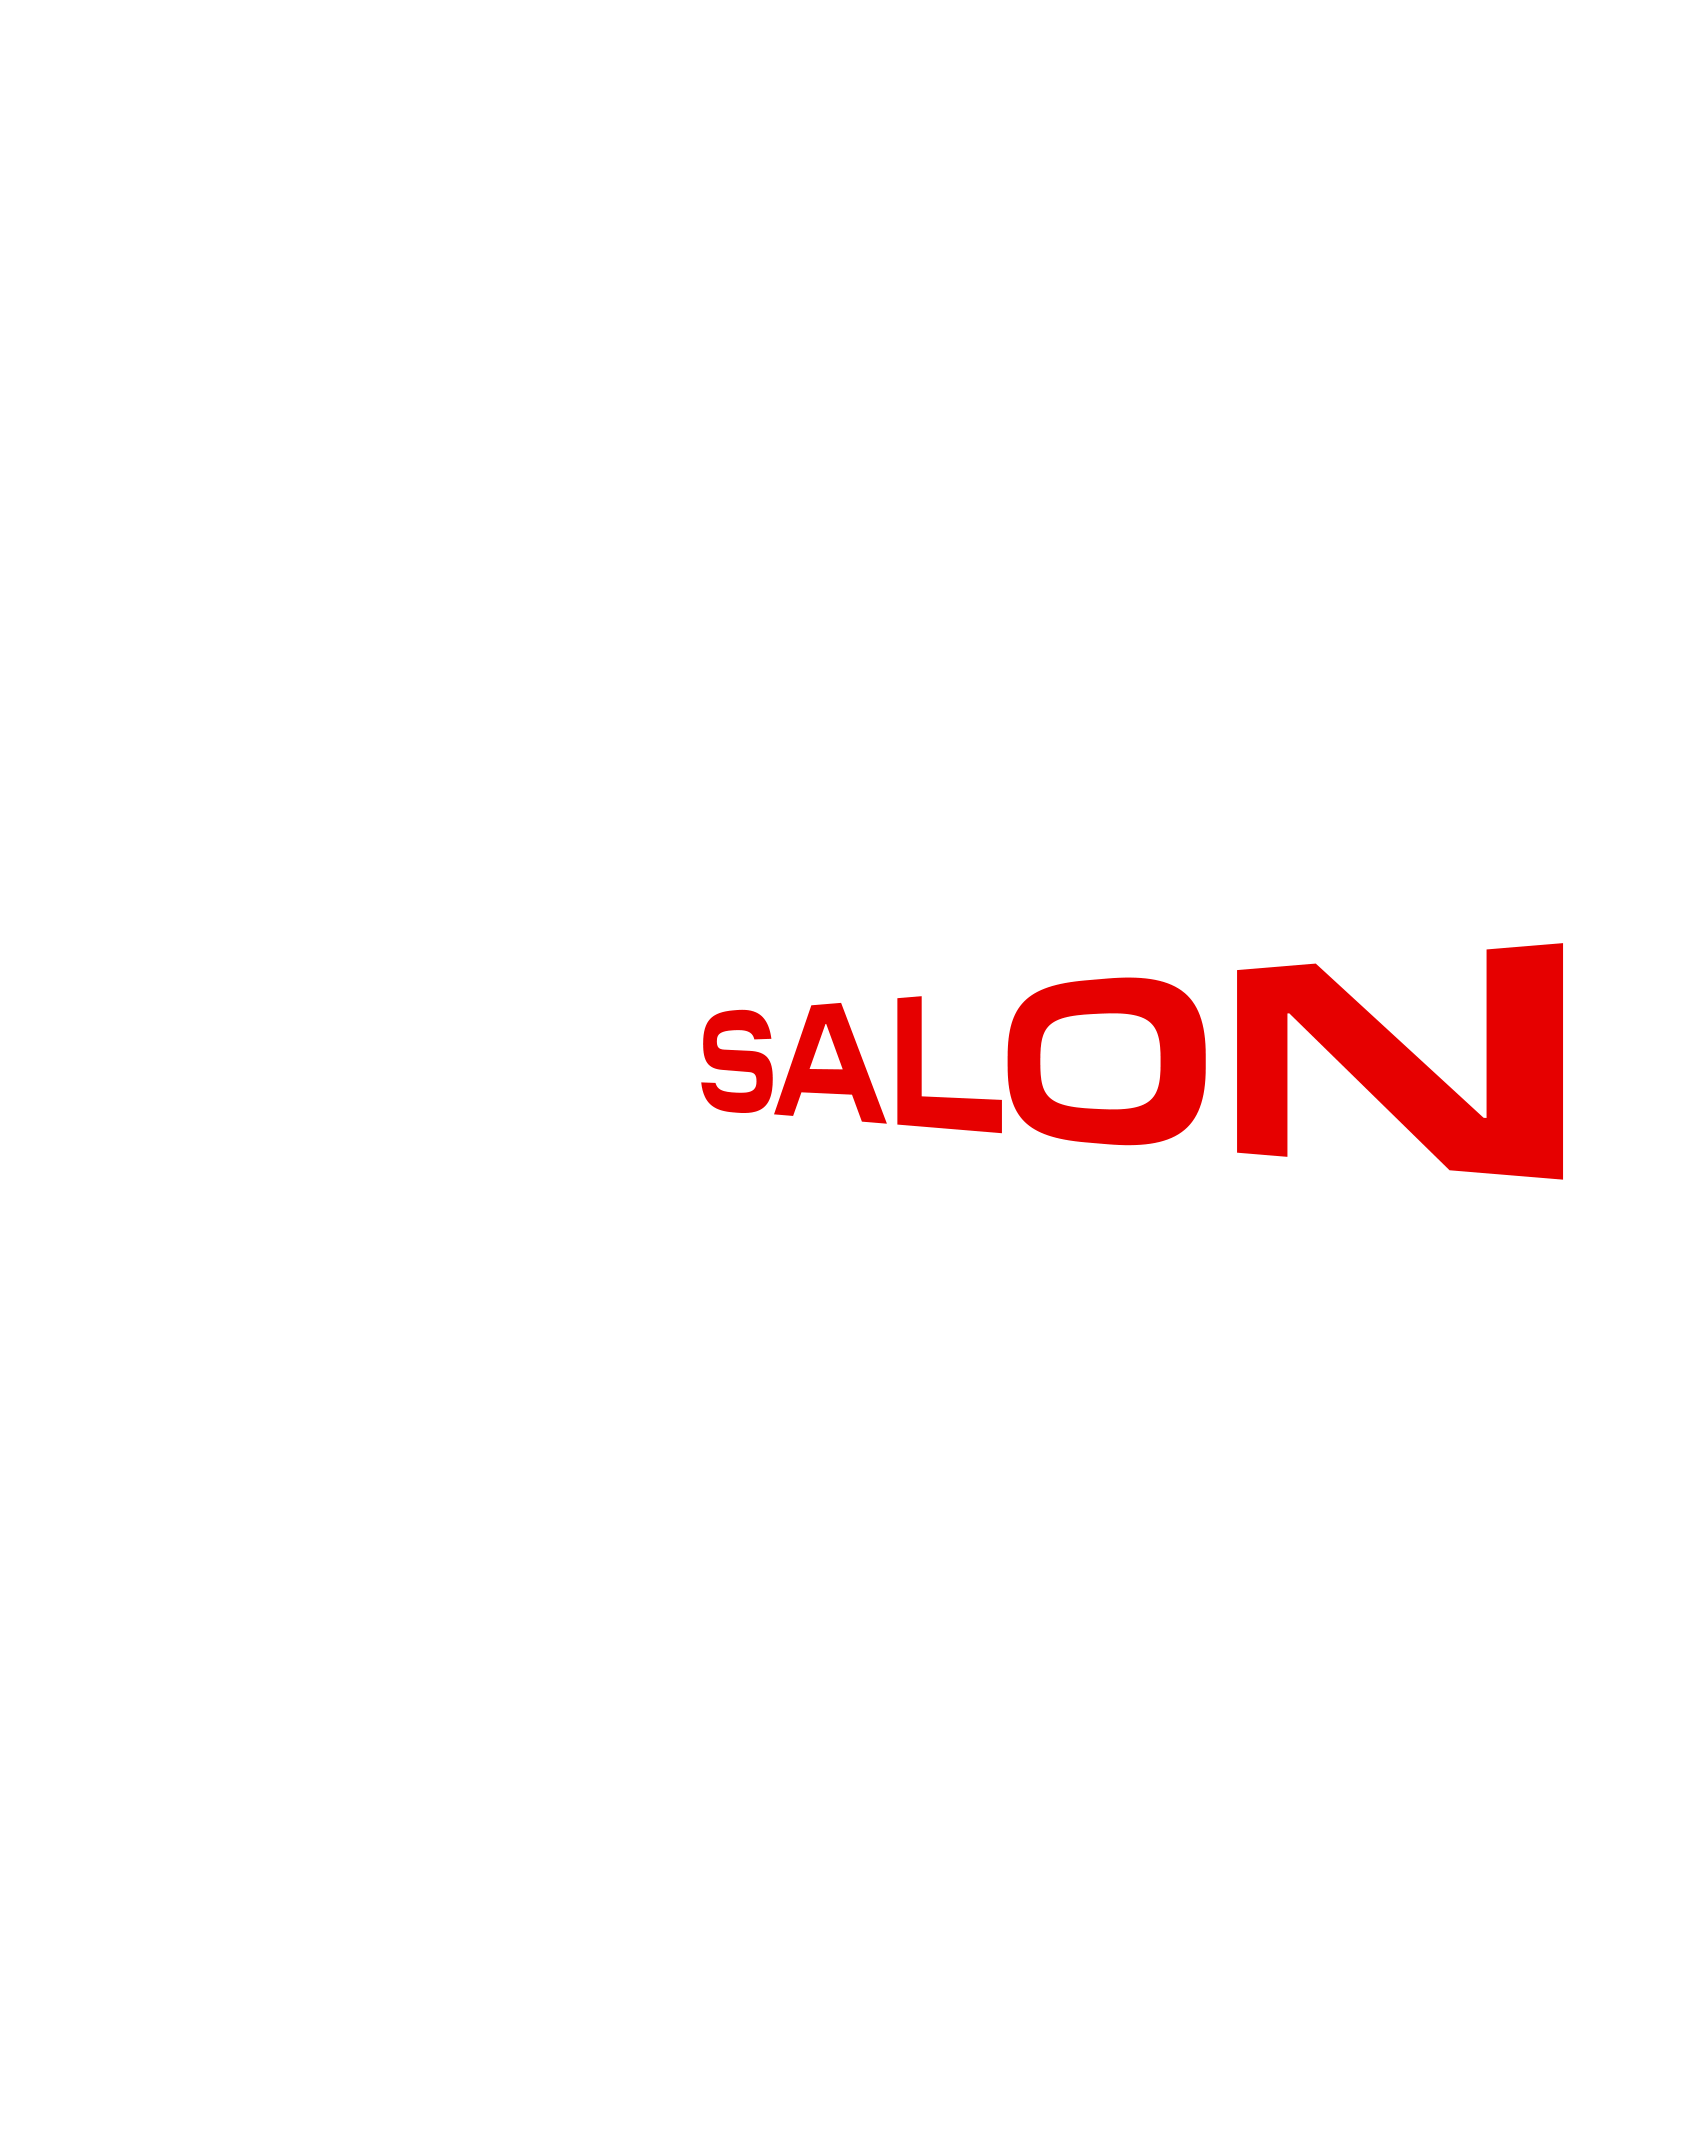 Raumsalon_logo_white